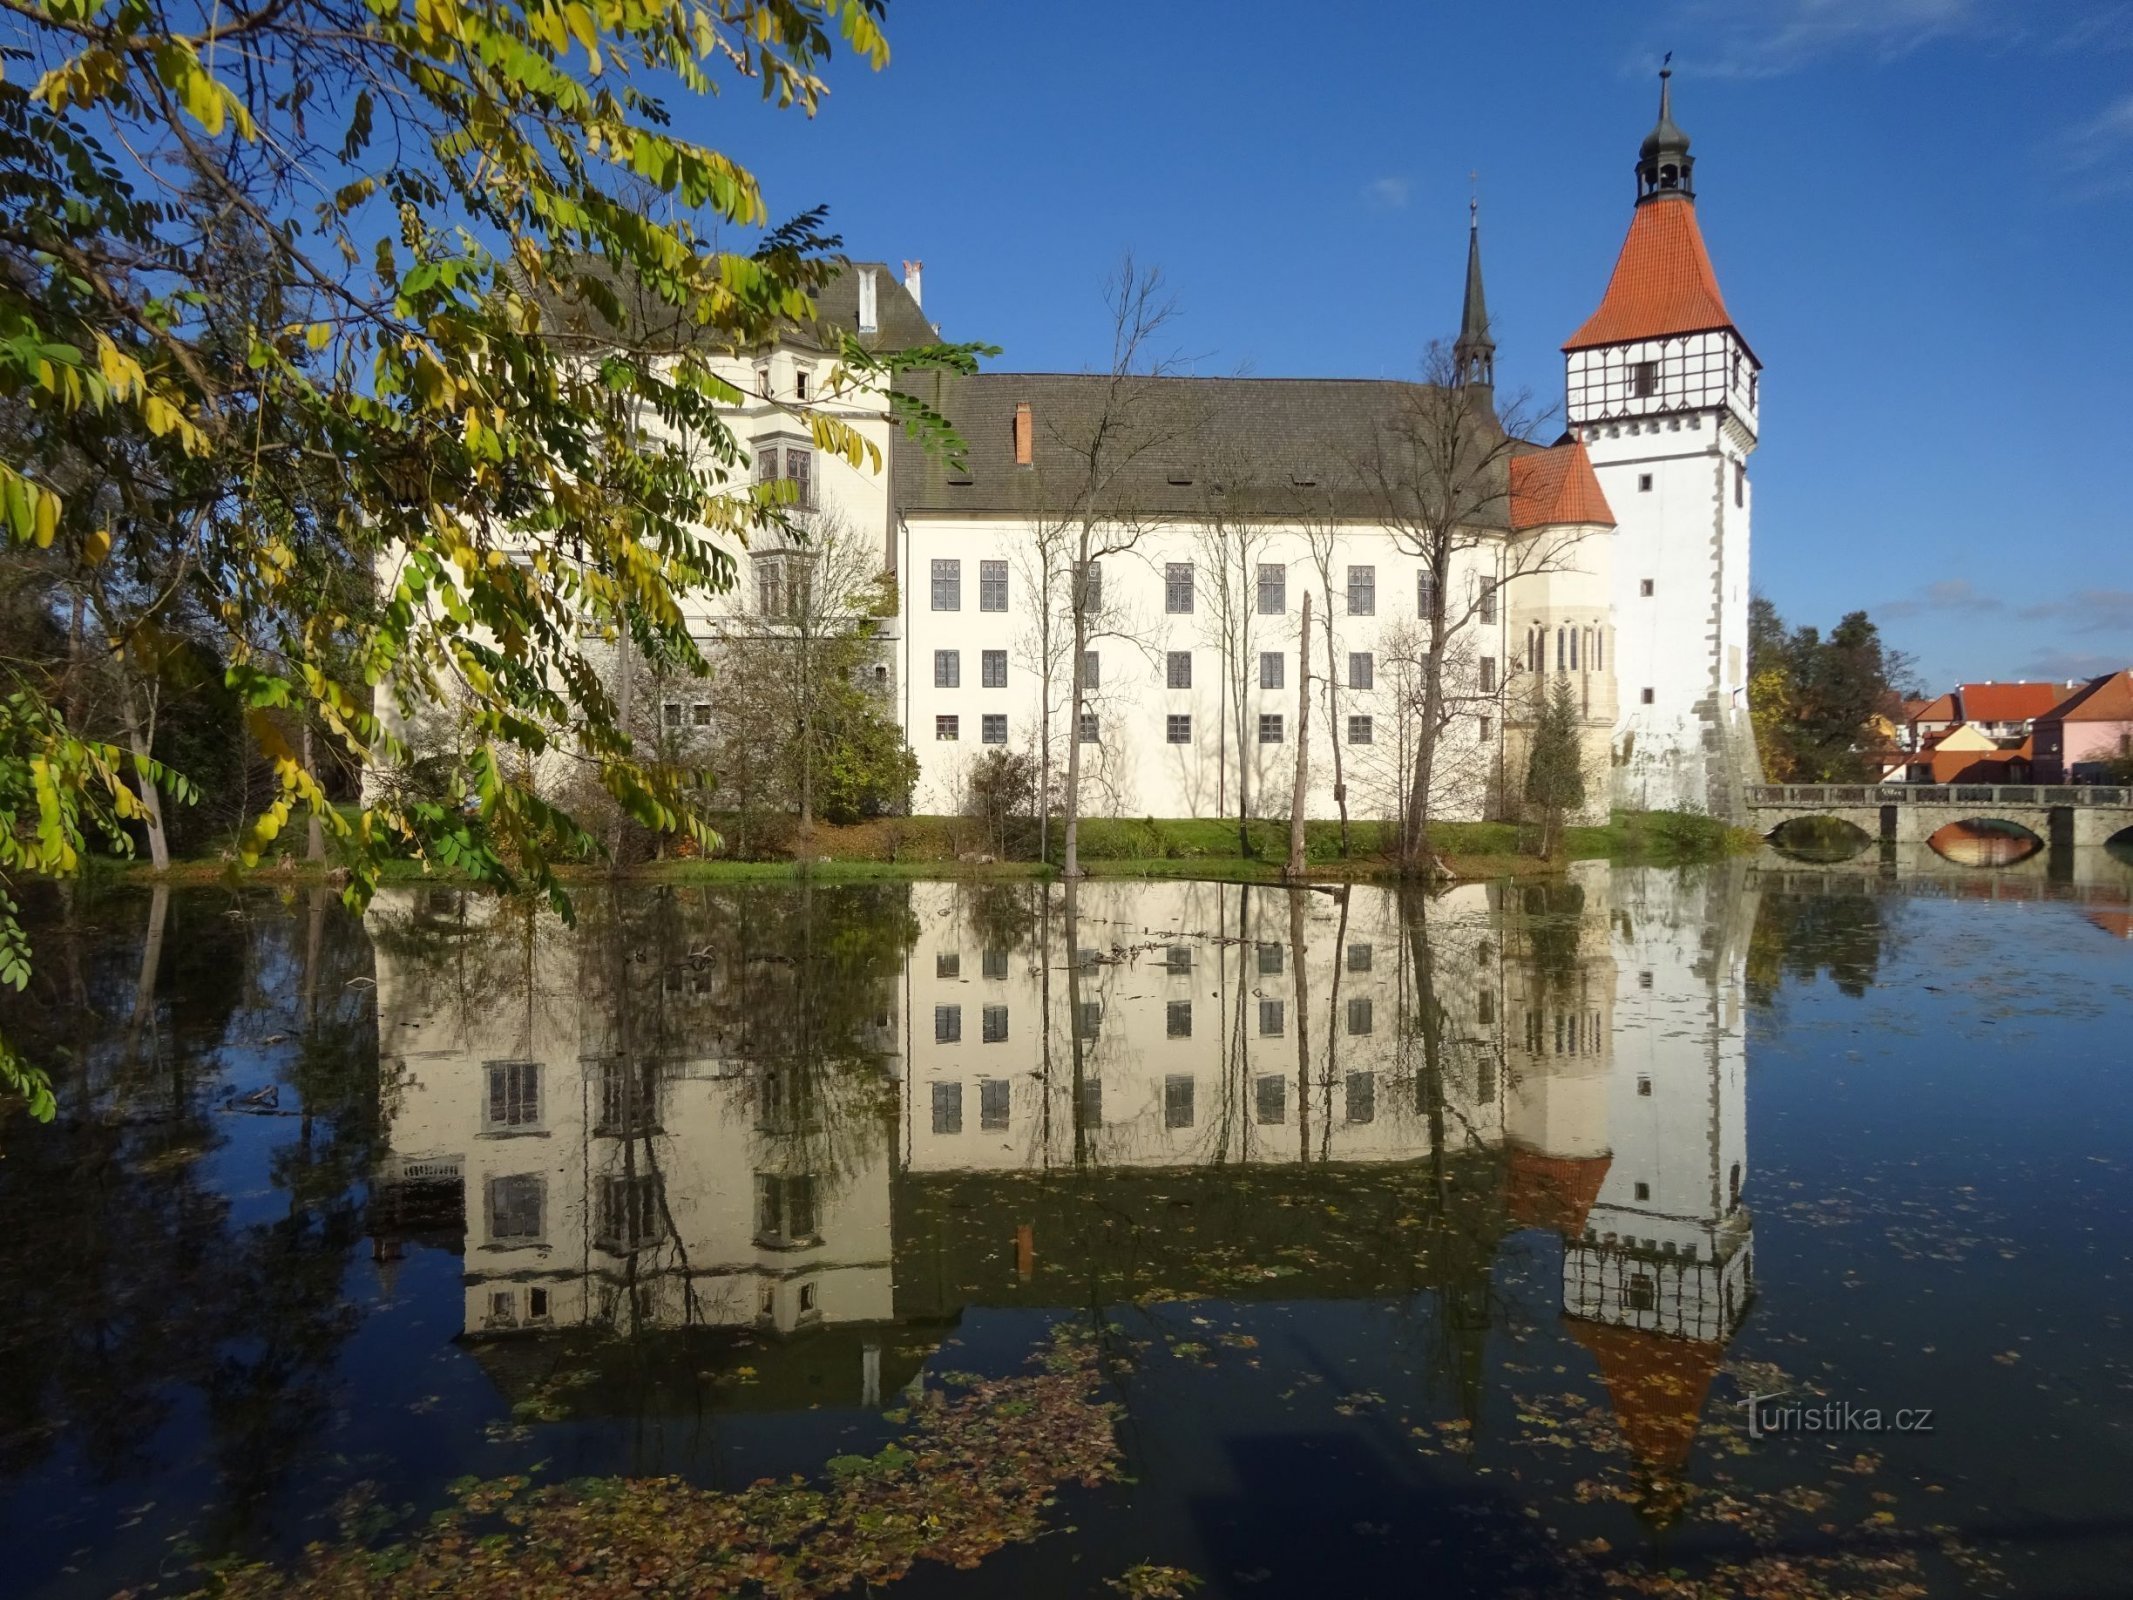 Blatná - κάστρο, πάρκο του κάστρου, αγρανάπαυση και σημύδες